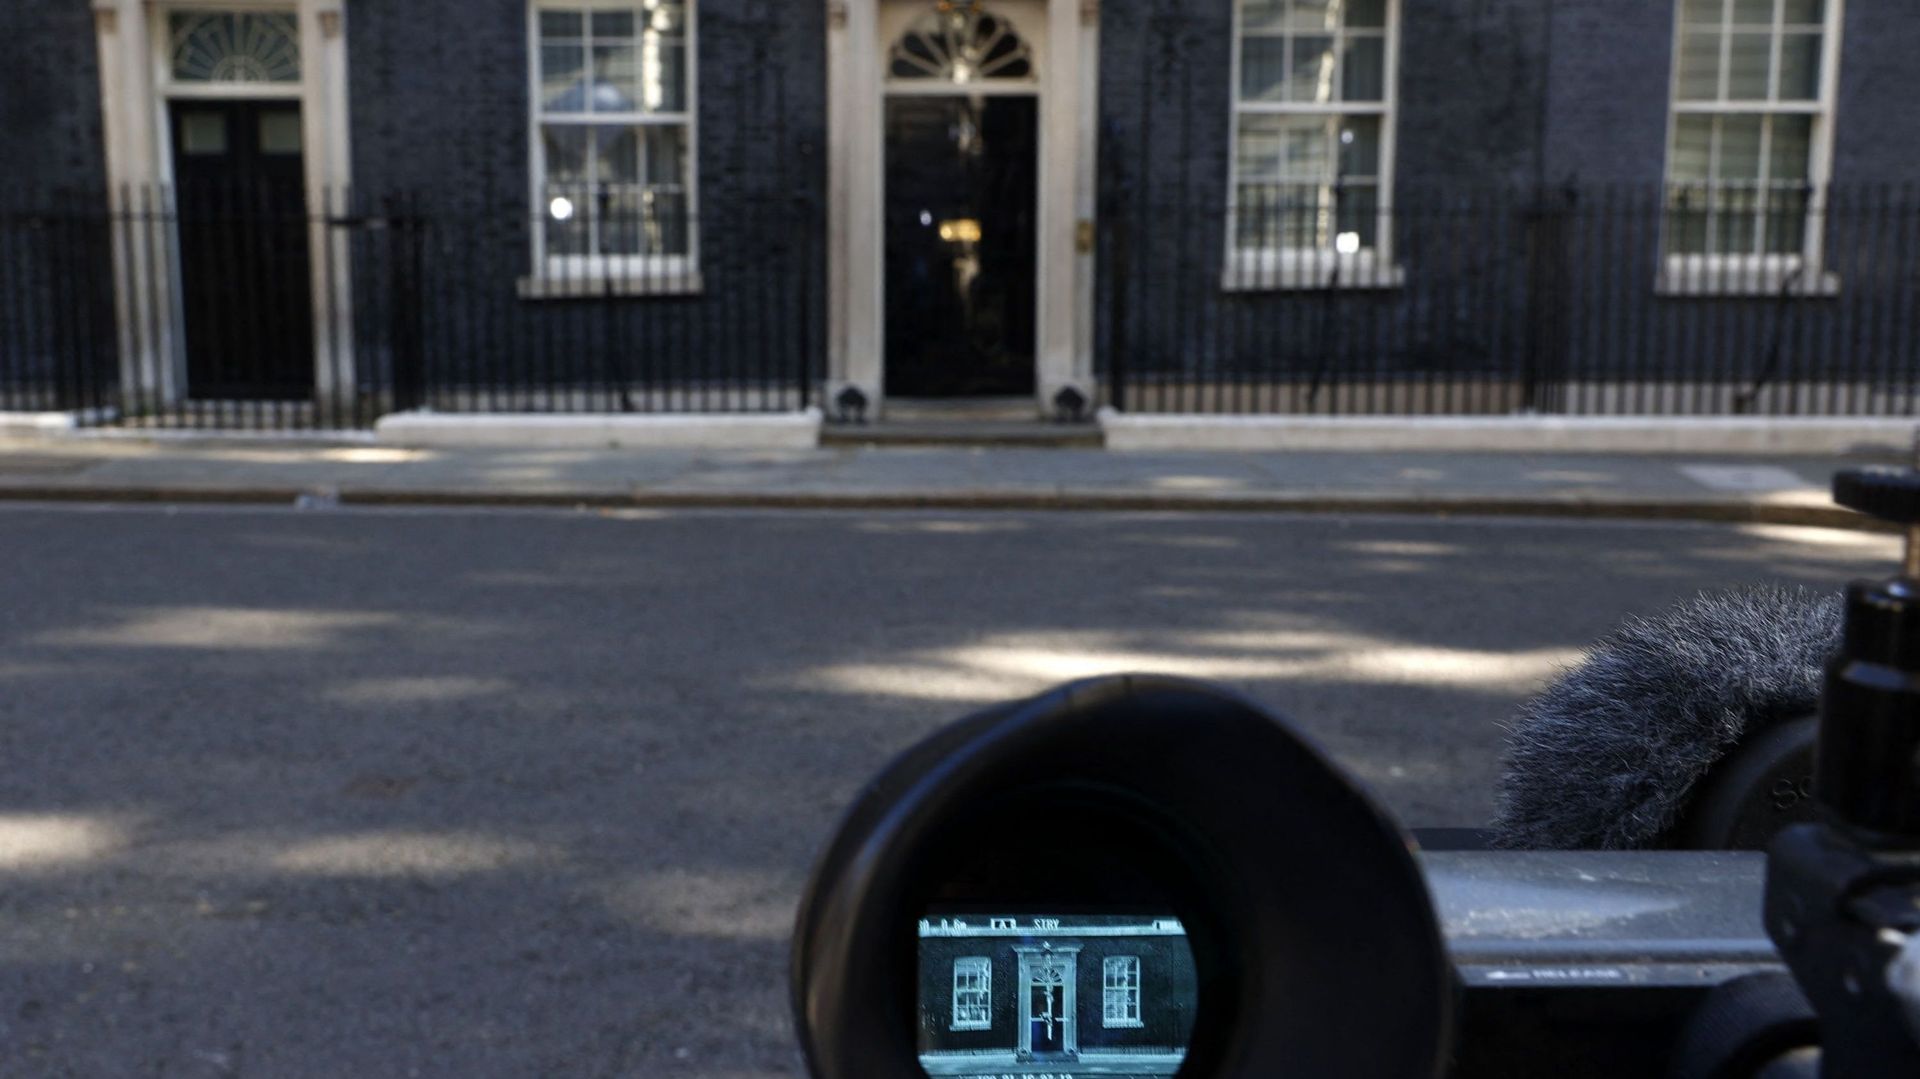 Le 10 Downing Street, résidence officielle du Premier ministre britannique